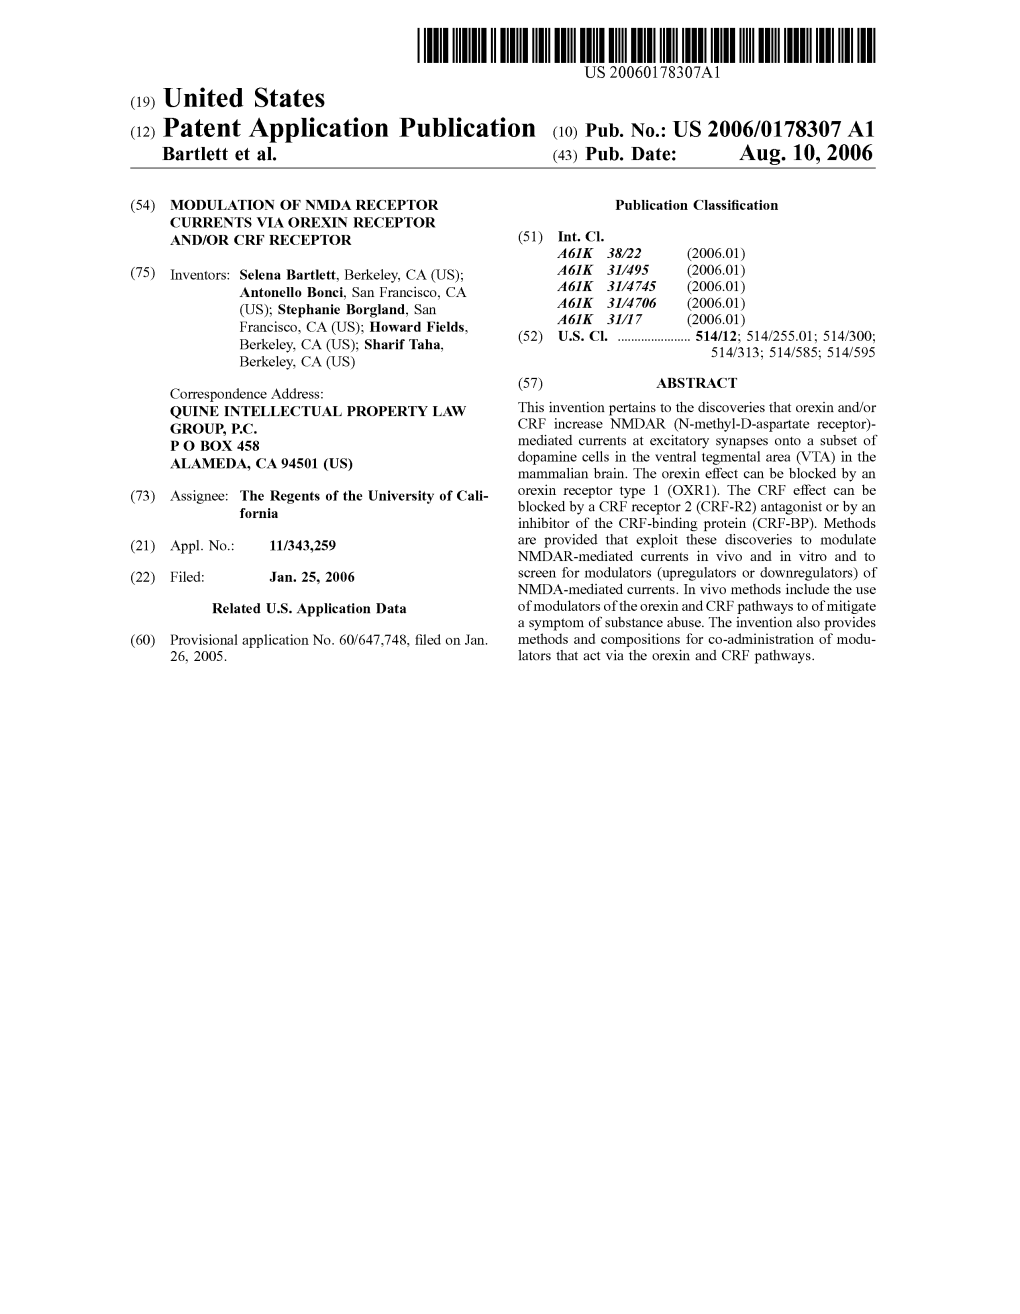 (12) Patent Application Publication (10) Pub. No.: US 2006/0178307 A1 Bartlett Et Al